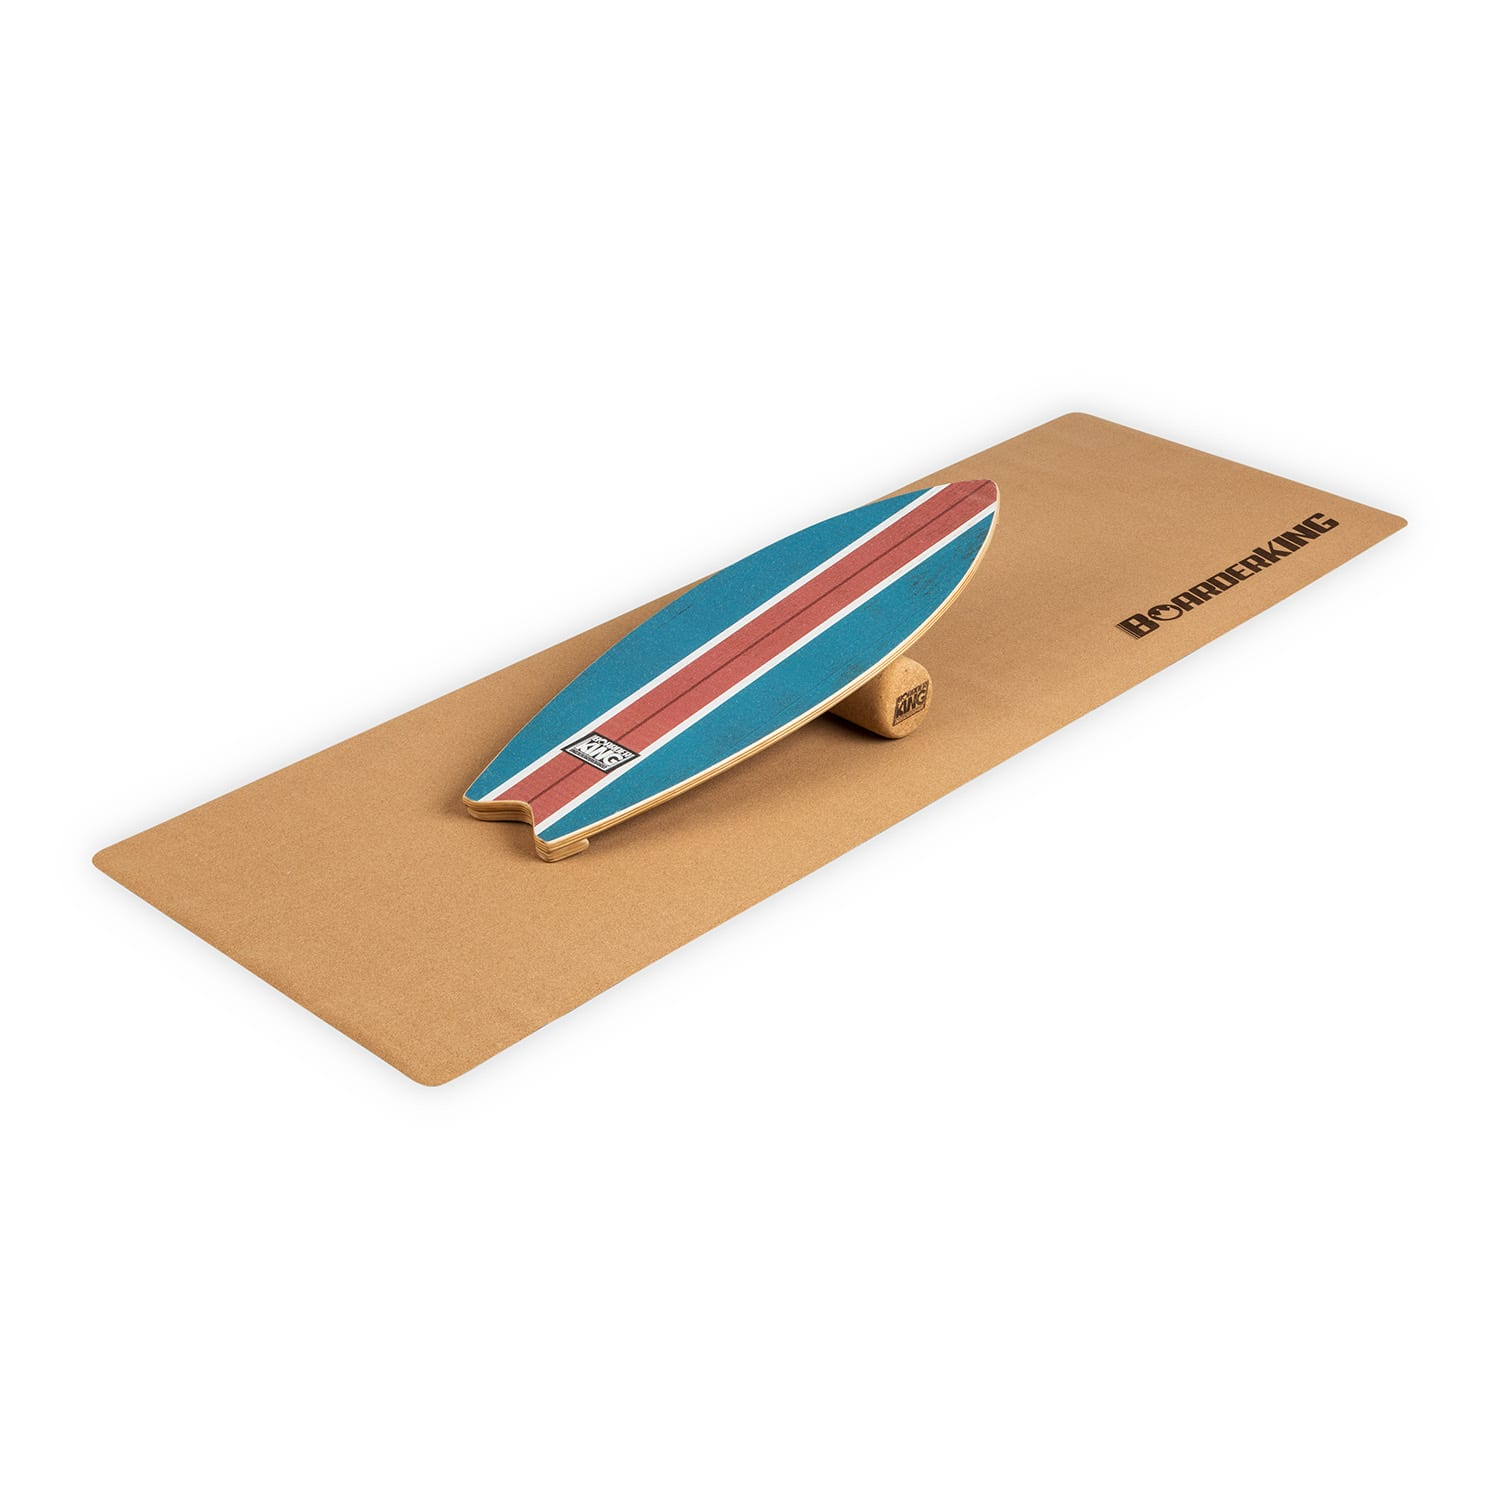 BoarderKING Indoorboard Wave, egyensúlyozó deszka, padlószőnyeg, henger, fa/kork